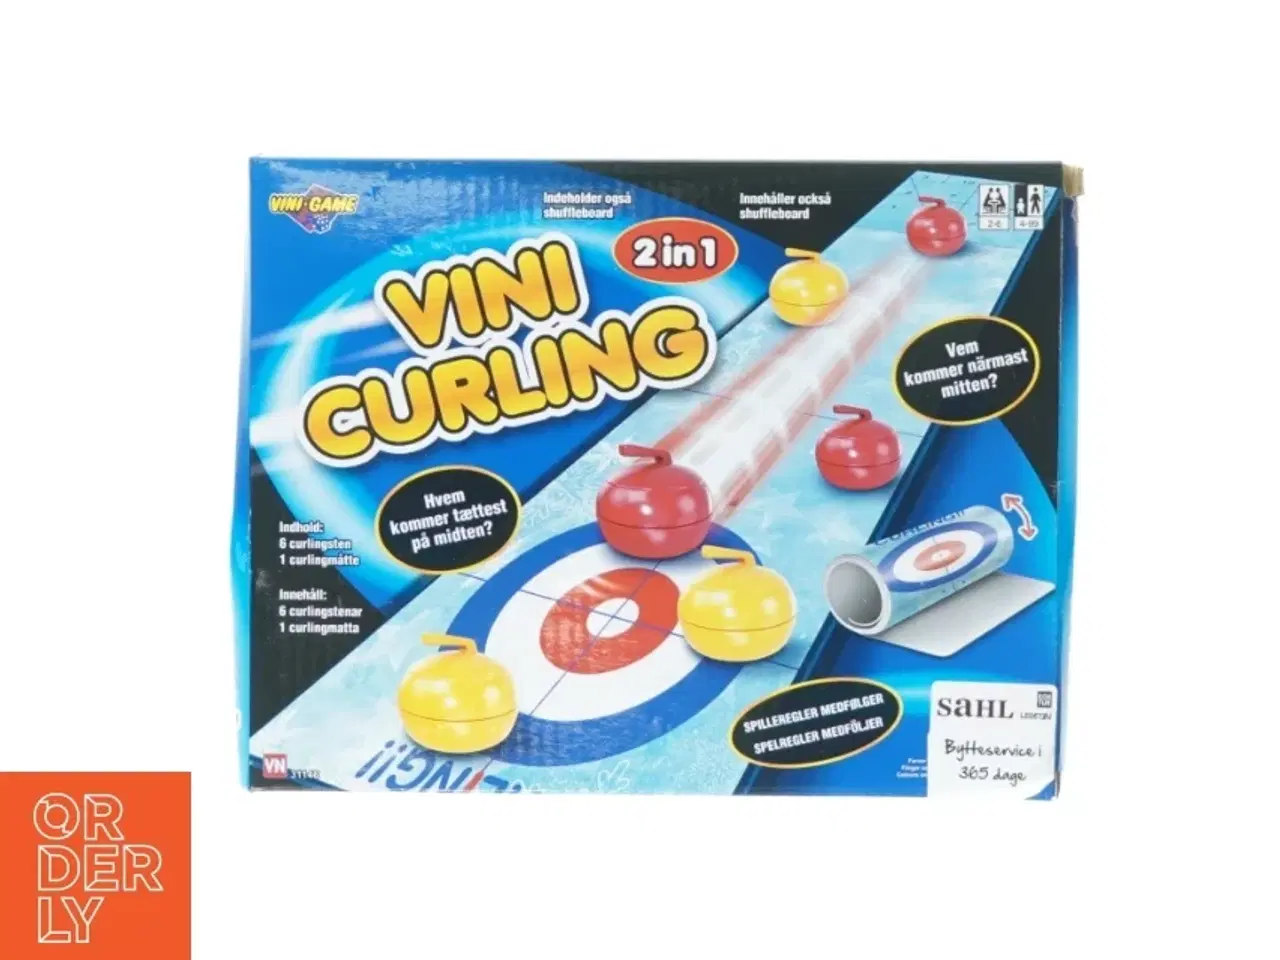 Billede 1 - Vini curling fra Vini-game (str. 25 x 20 cm)